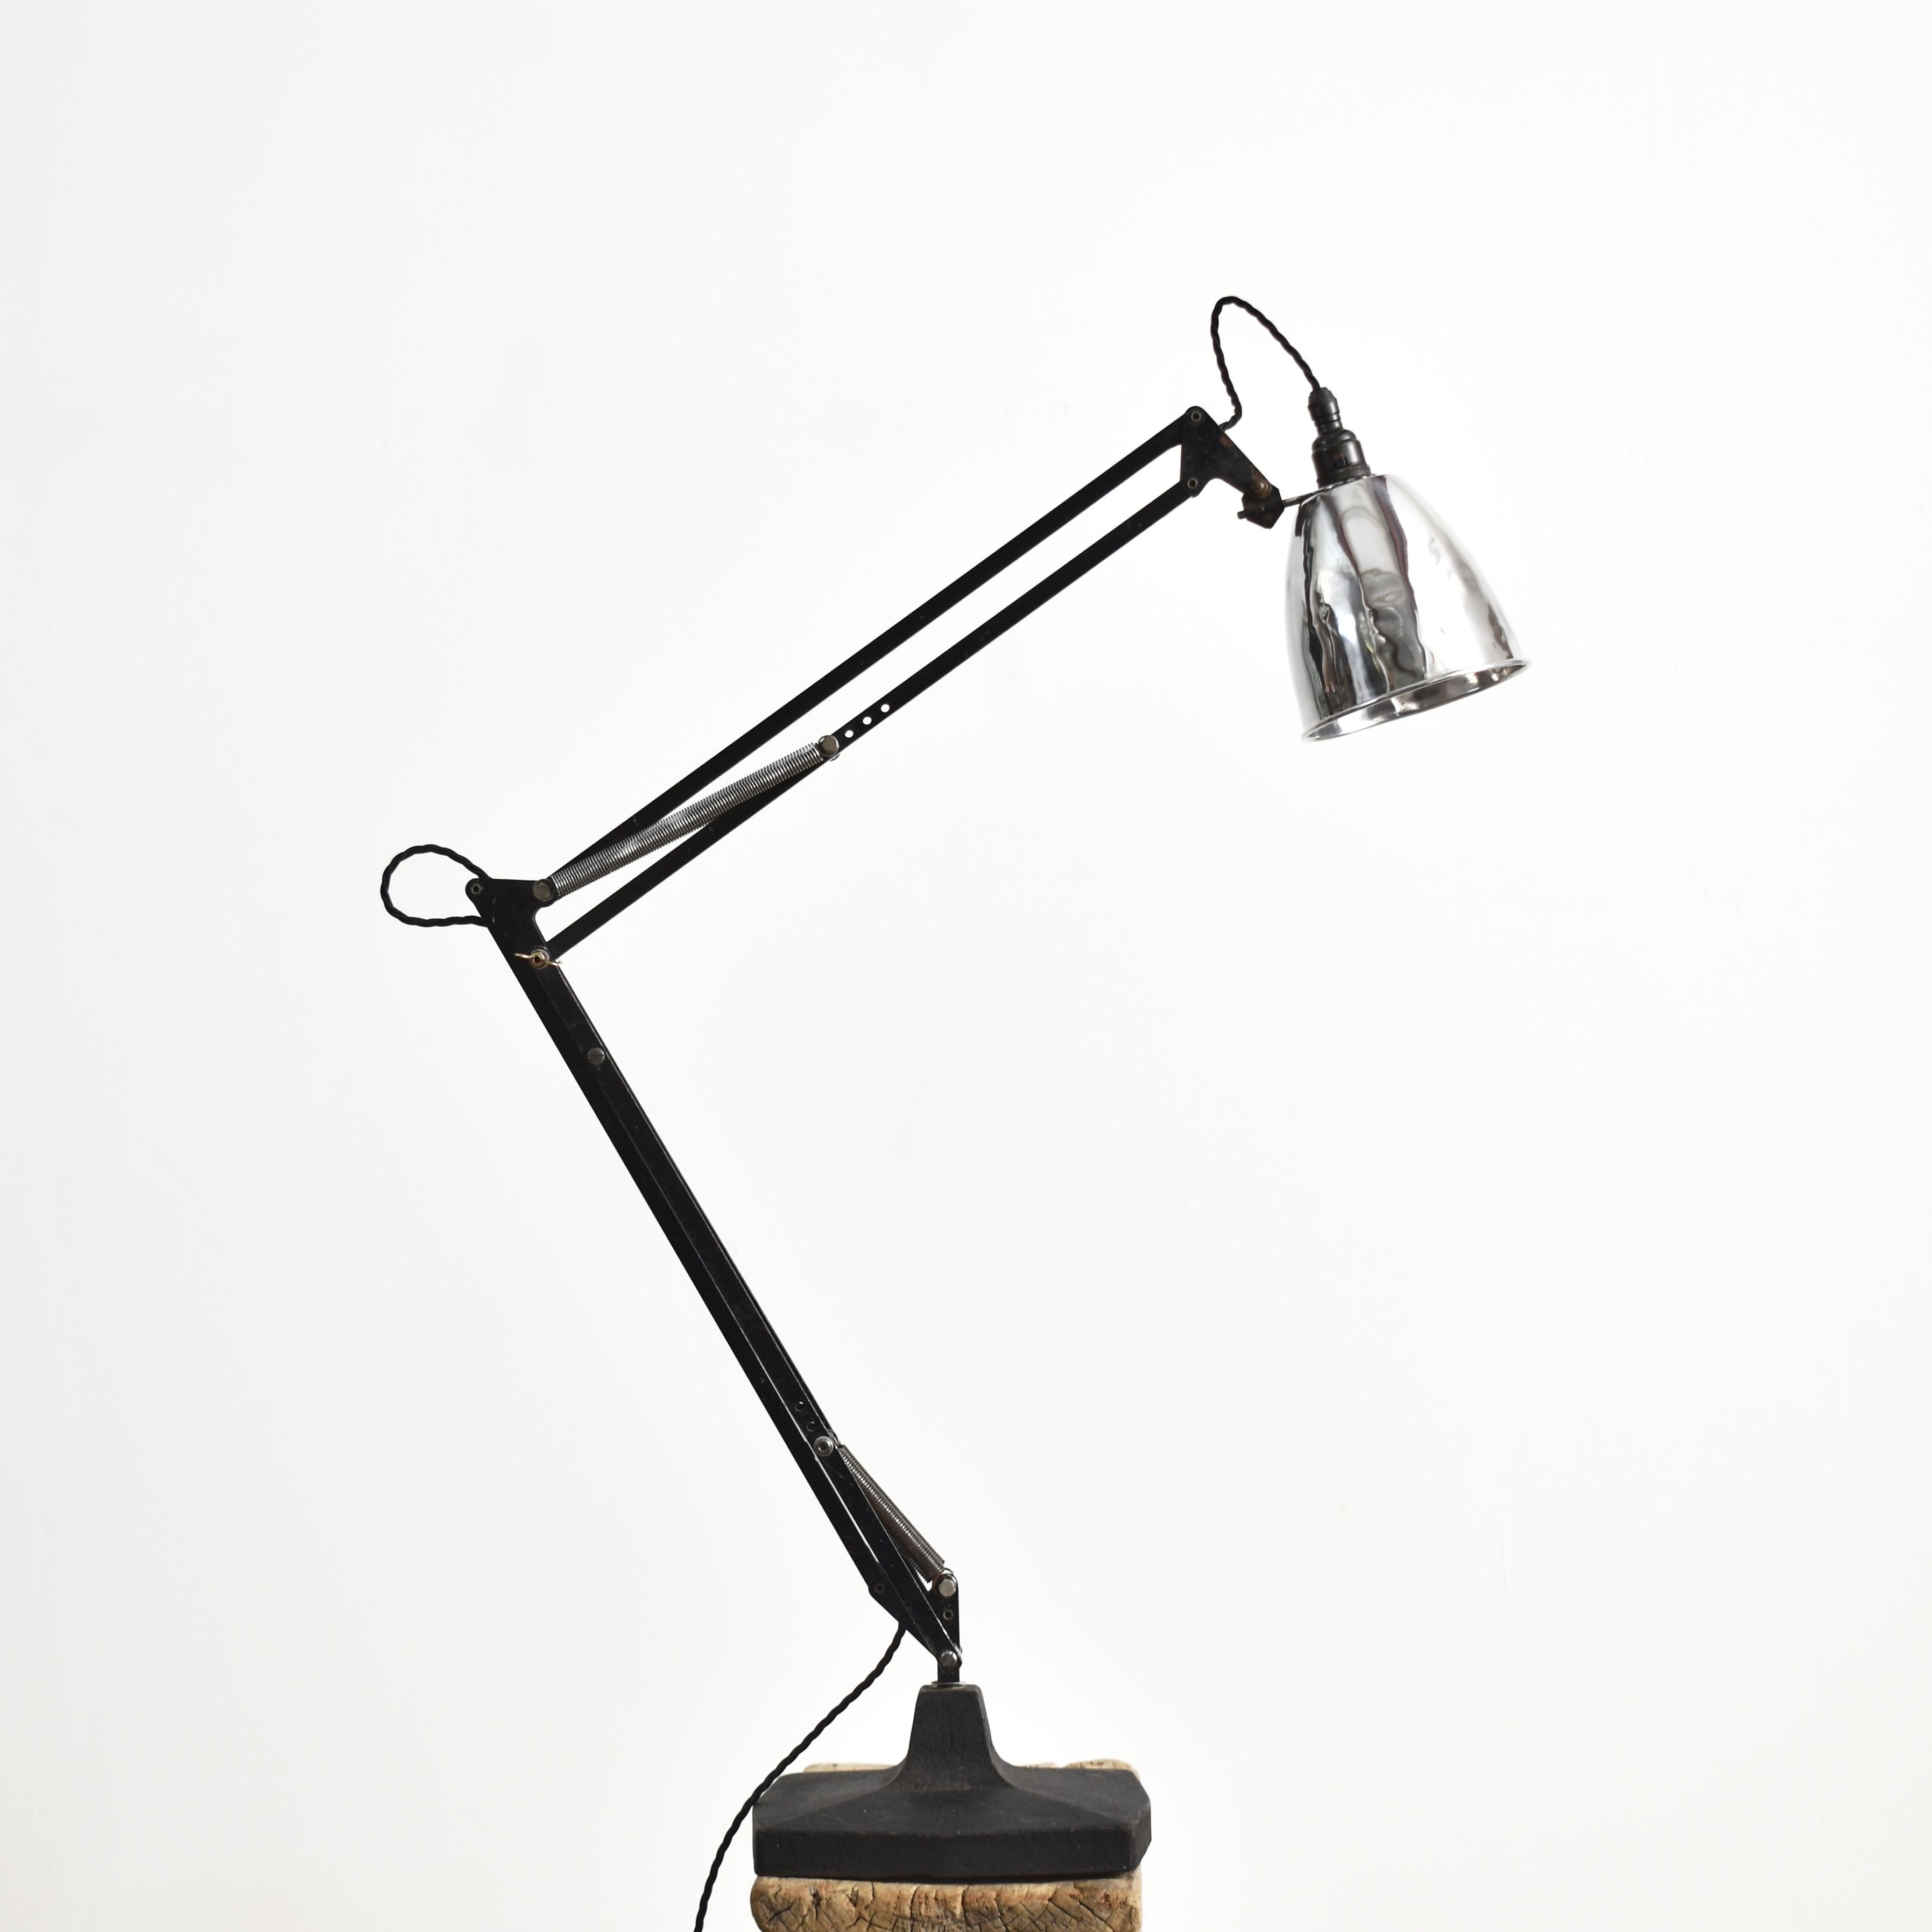 Original Anglepoise Desk Lamp 1209 Model By Herbert Terry & Sons - A

Une lampe Anglepoise originale de Herbert Terry and Sons, modèle 1209, une lampe de bureau classique avec une base carrée en métal moulé, c'est la base la plus grande qui est la